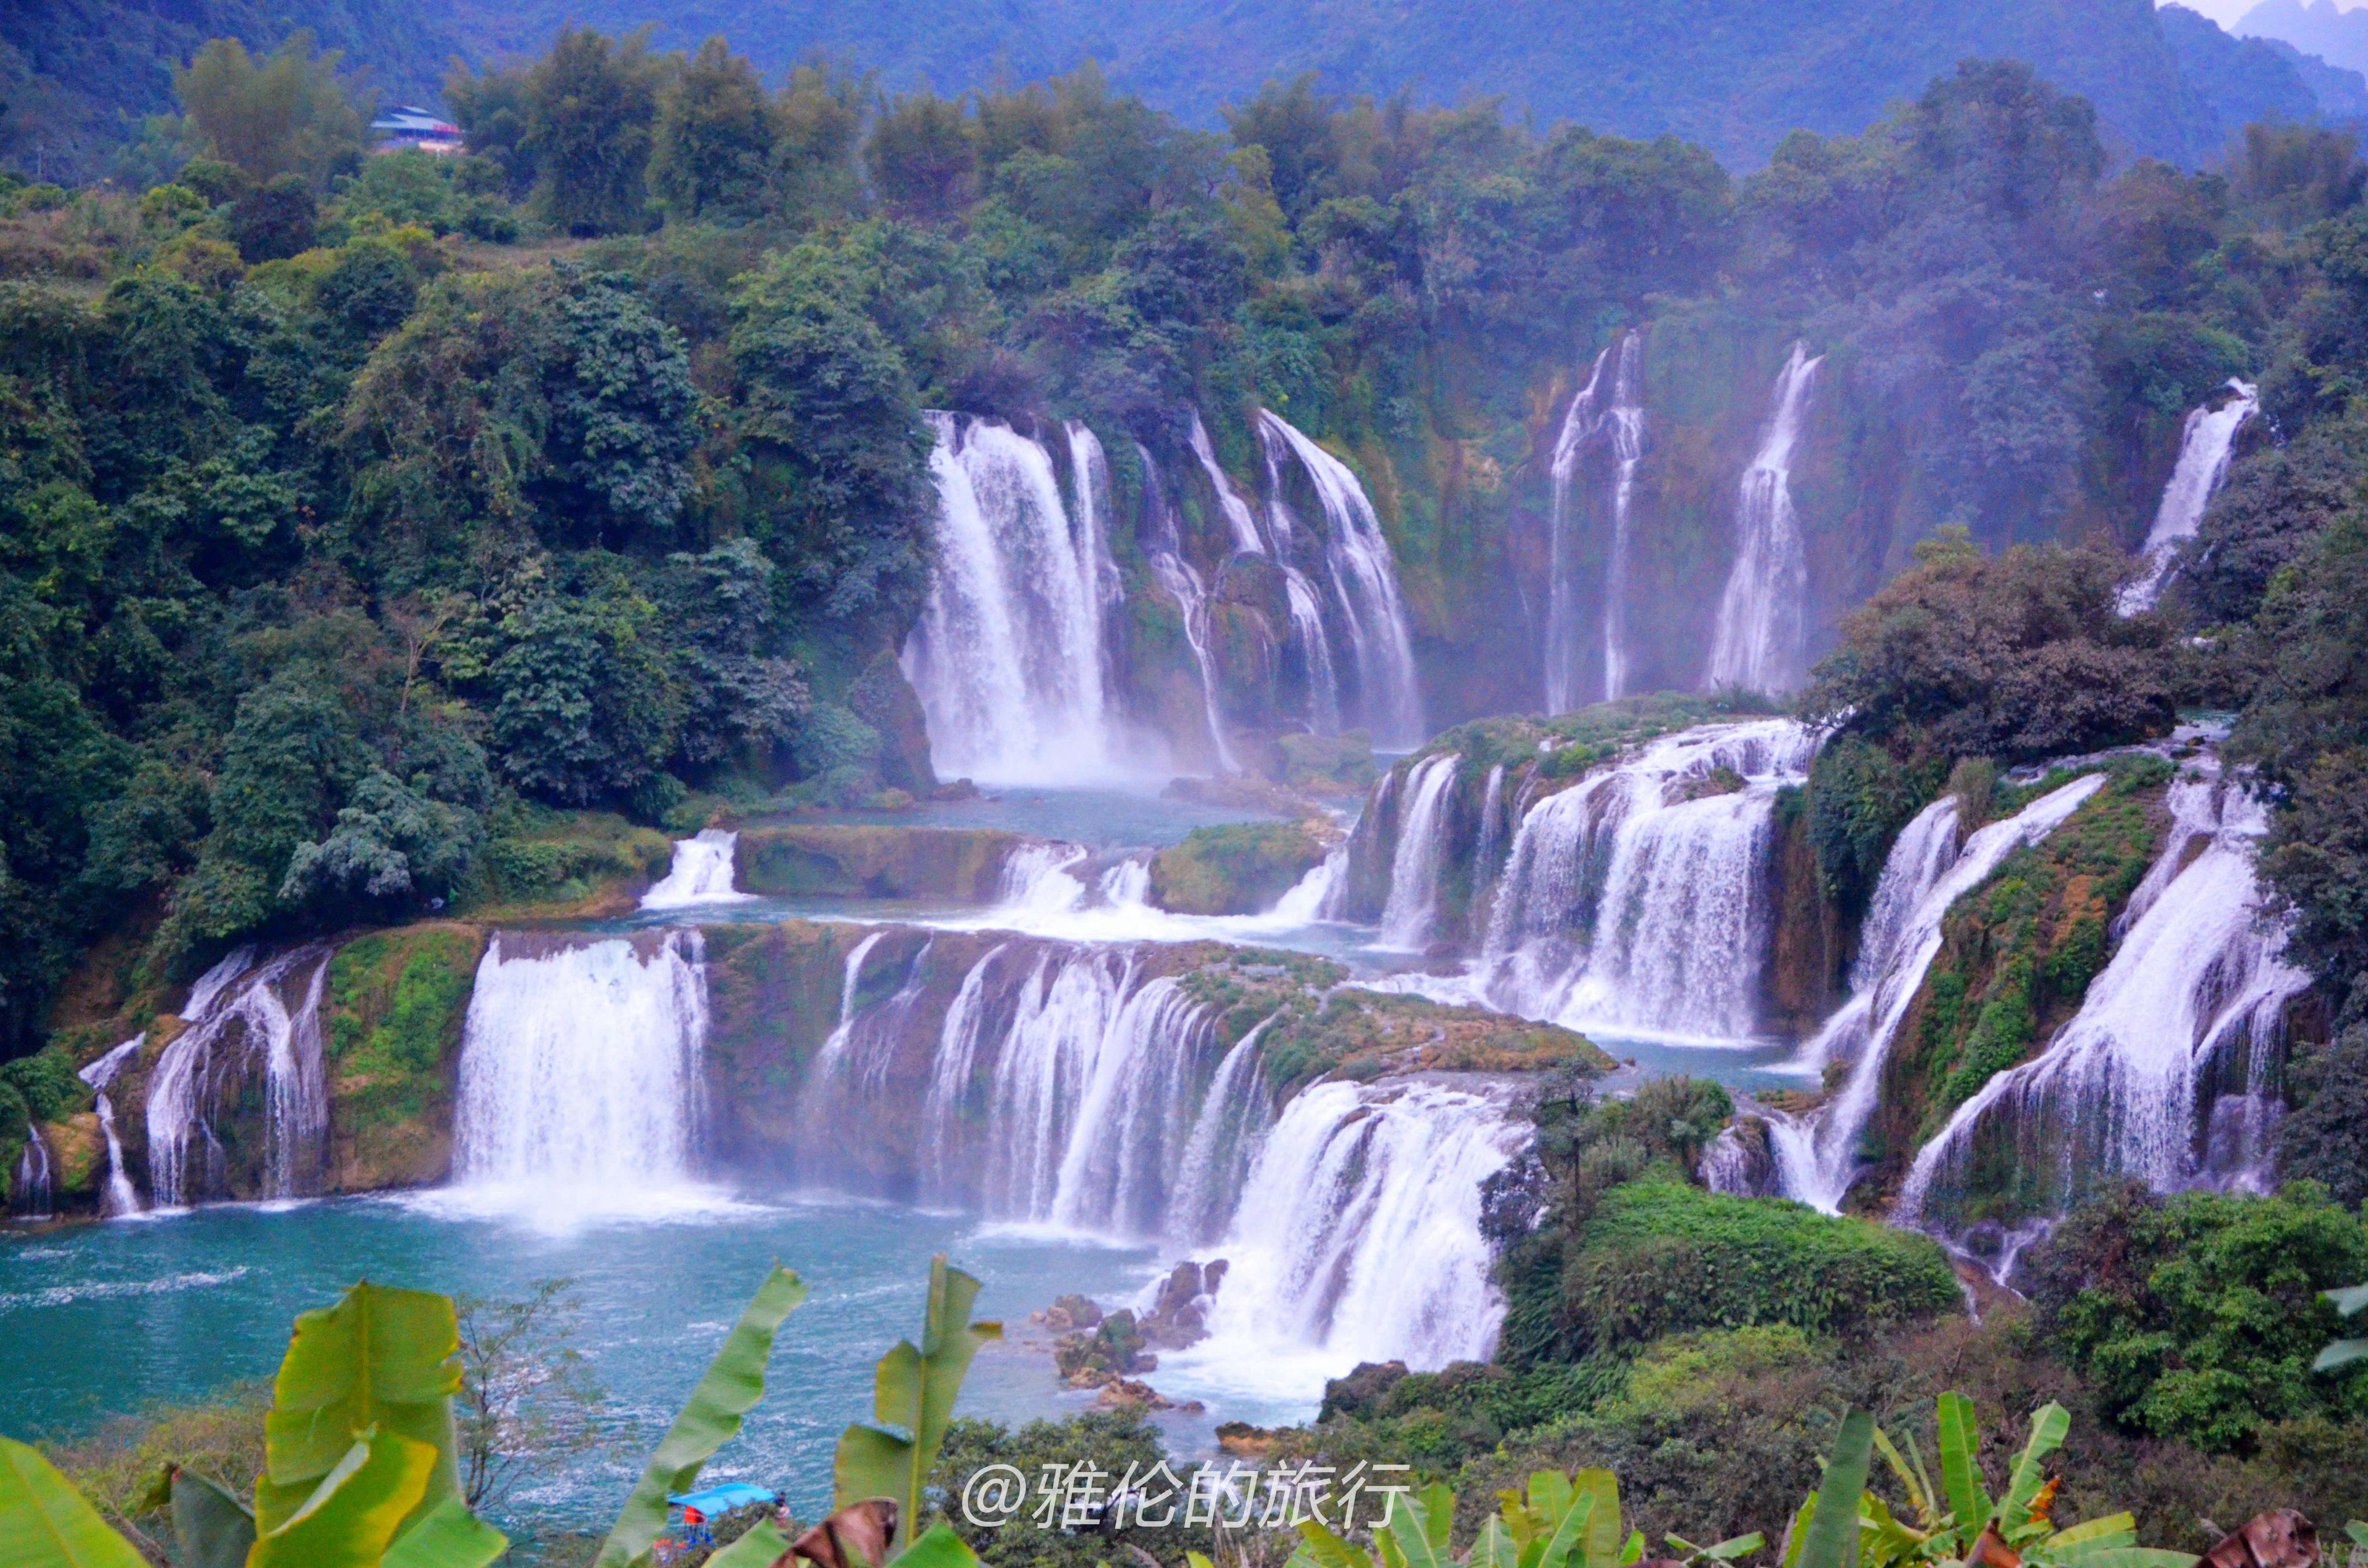 贵州省梵净山获准列入世界自然遗产名录 中国世界遗产增至53项 - 中国日报网